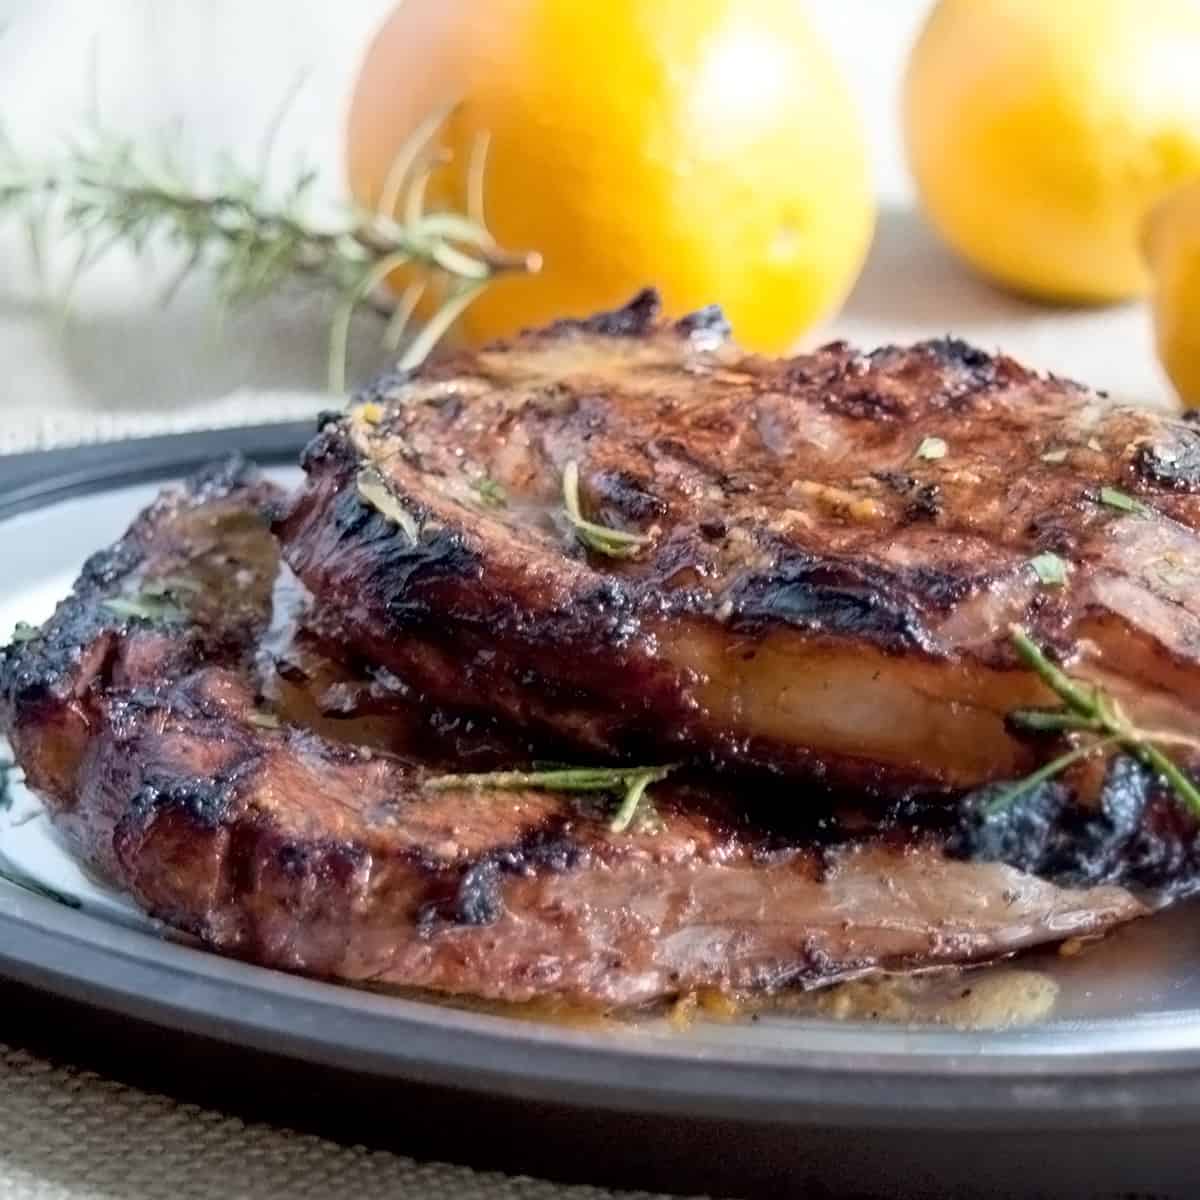 Two ribeye steaks on a platter.